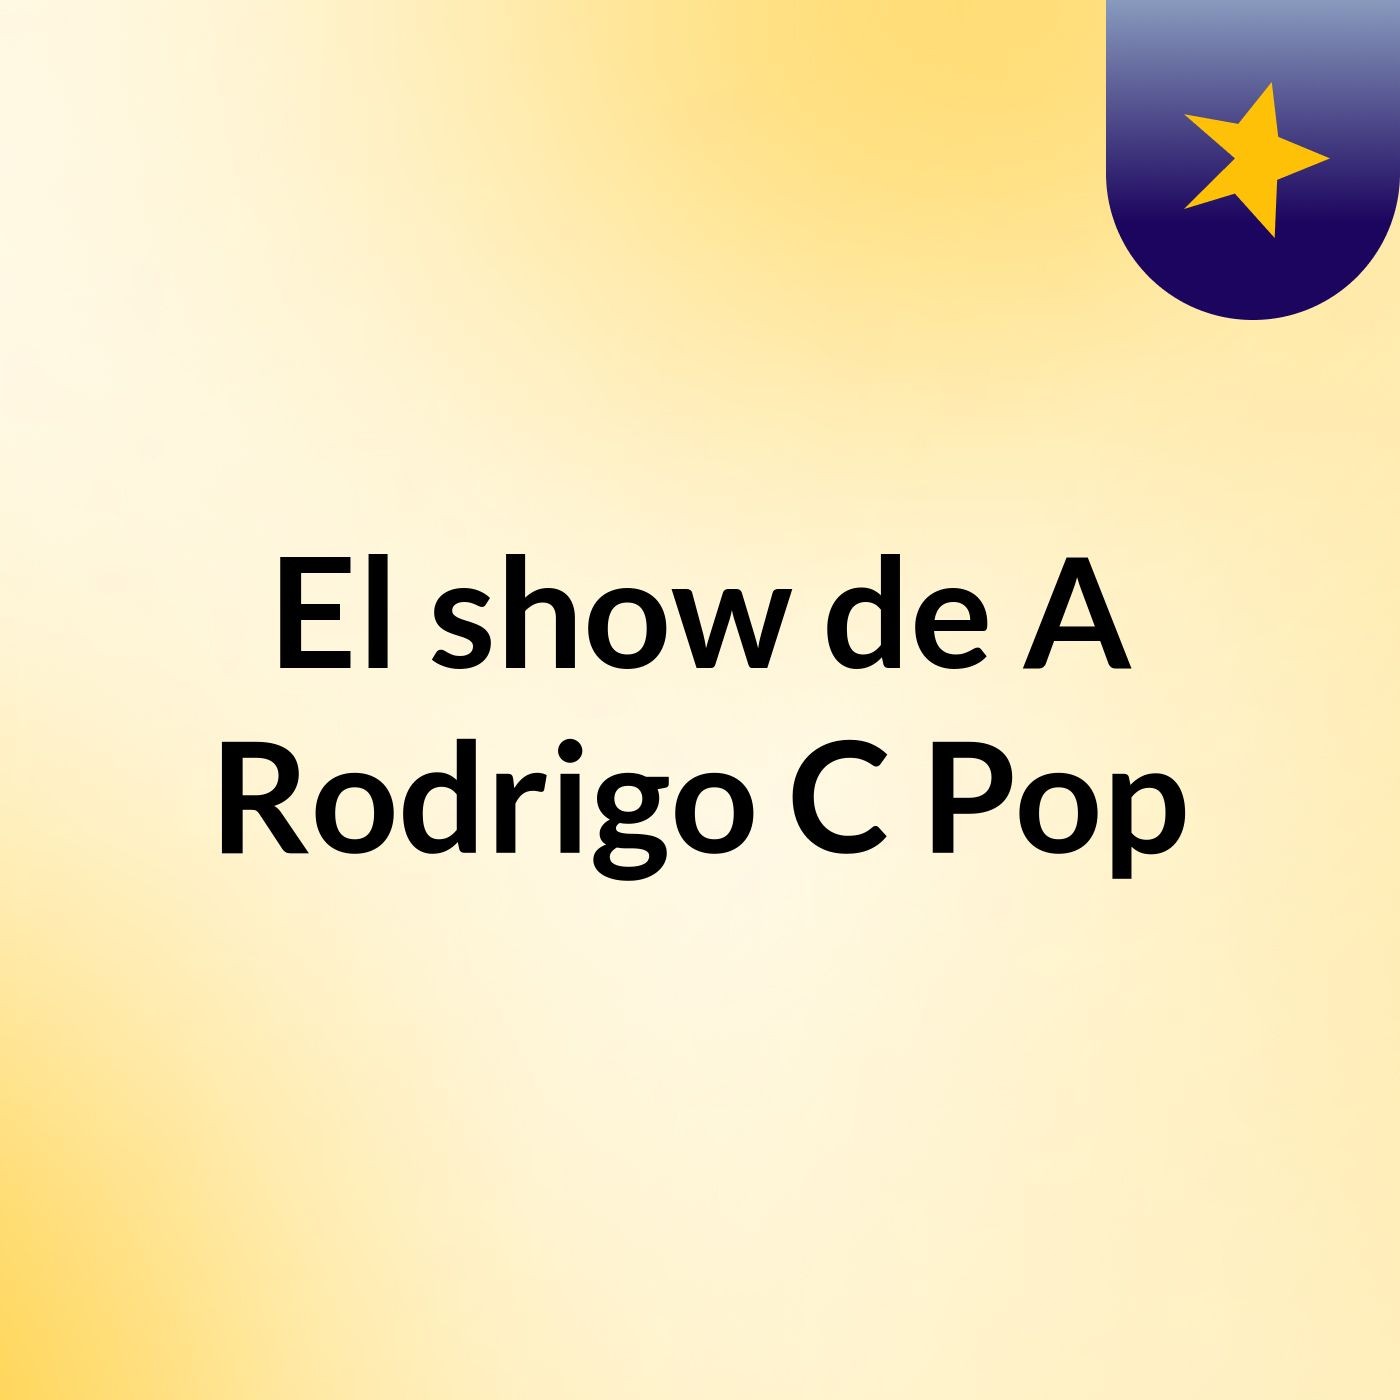 El show de A Rodrigo C Pop